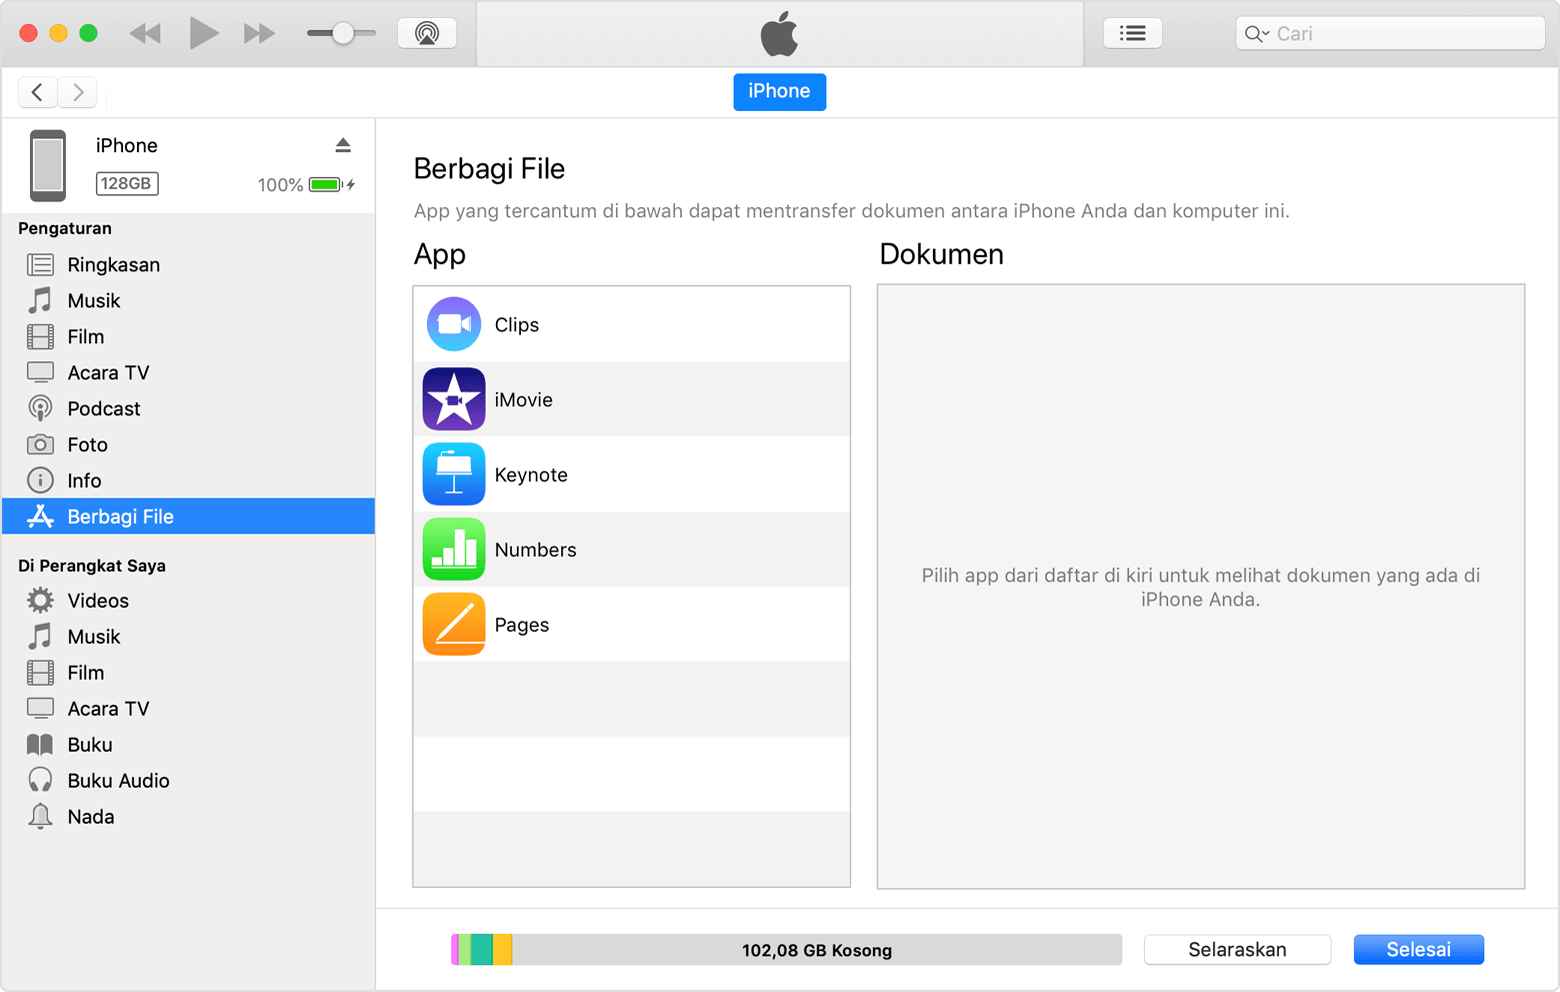 Jendela iTunes dengan iPhone tersambung dan Berbagi File dipilih dari daftar.